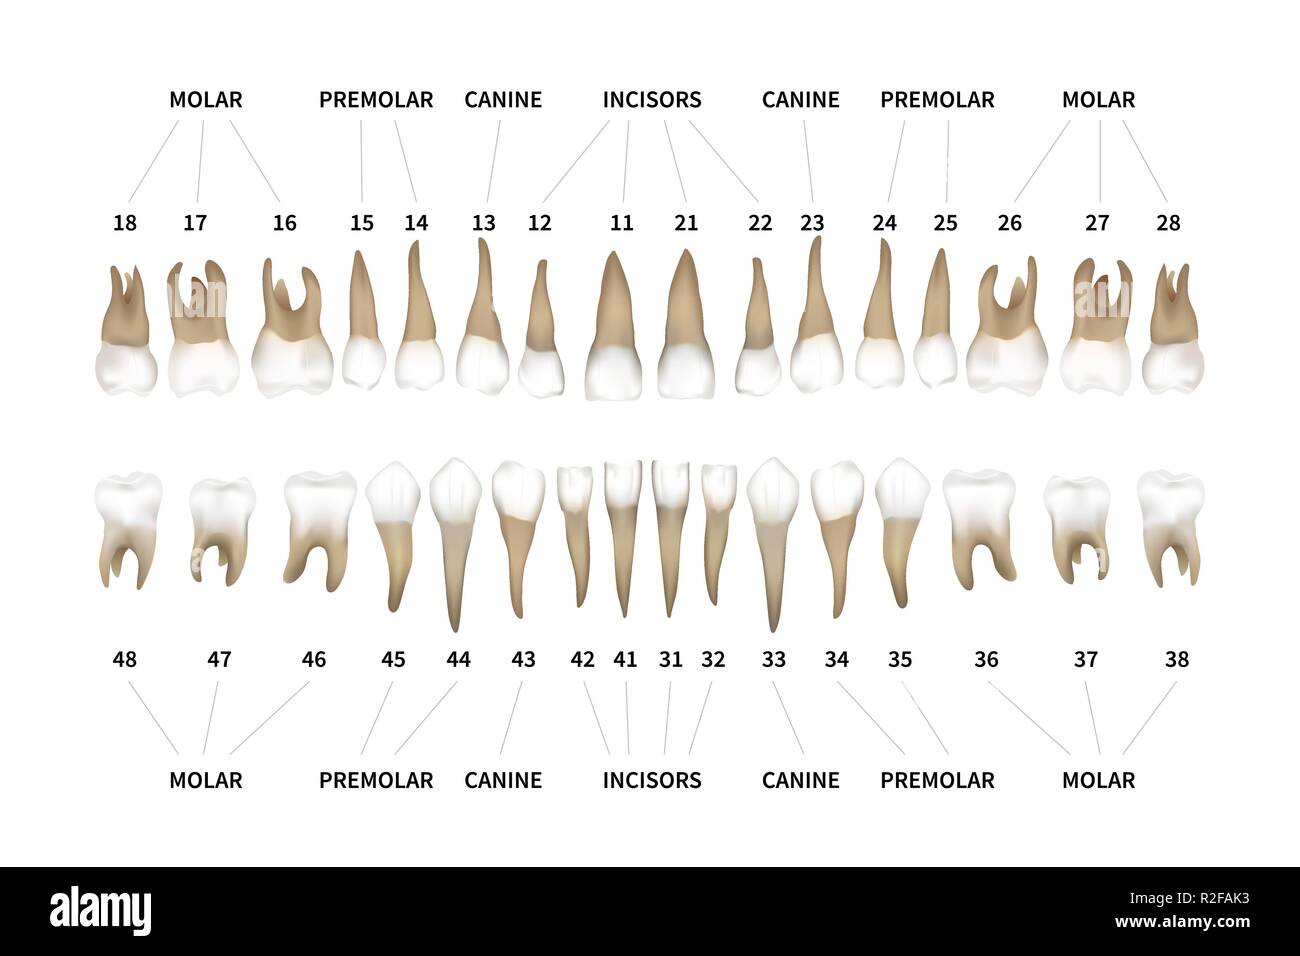 La dentition humaine tableau infographique complet avec les numéros de dents pour les mâchoires supérieures et inférieures sur blanc Illustration de Vecteur